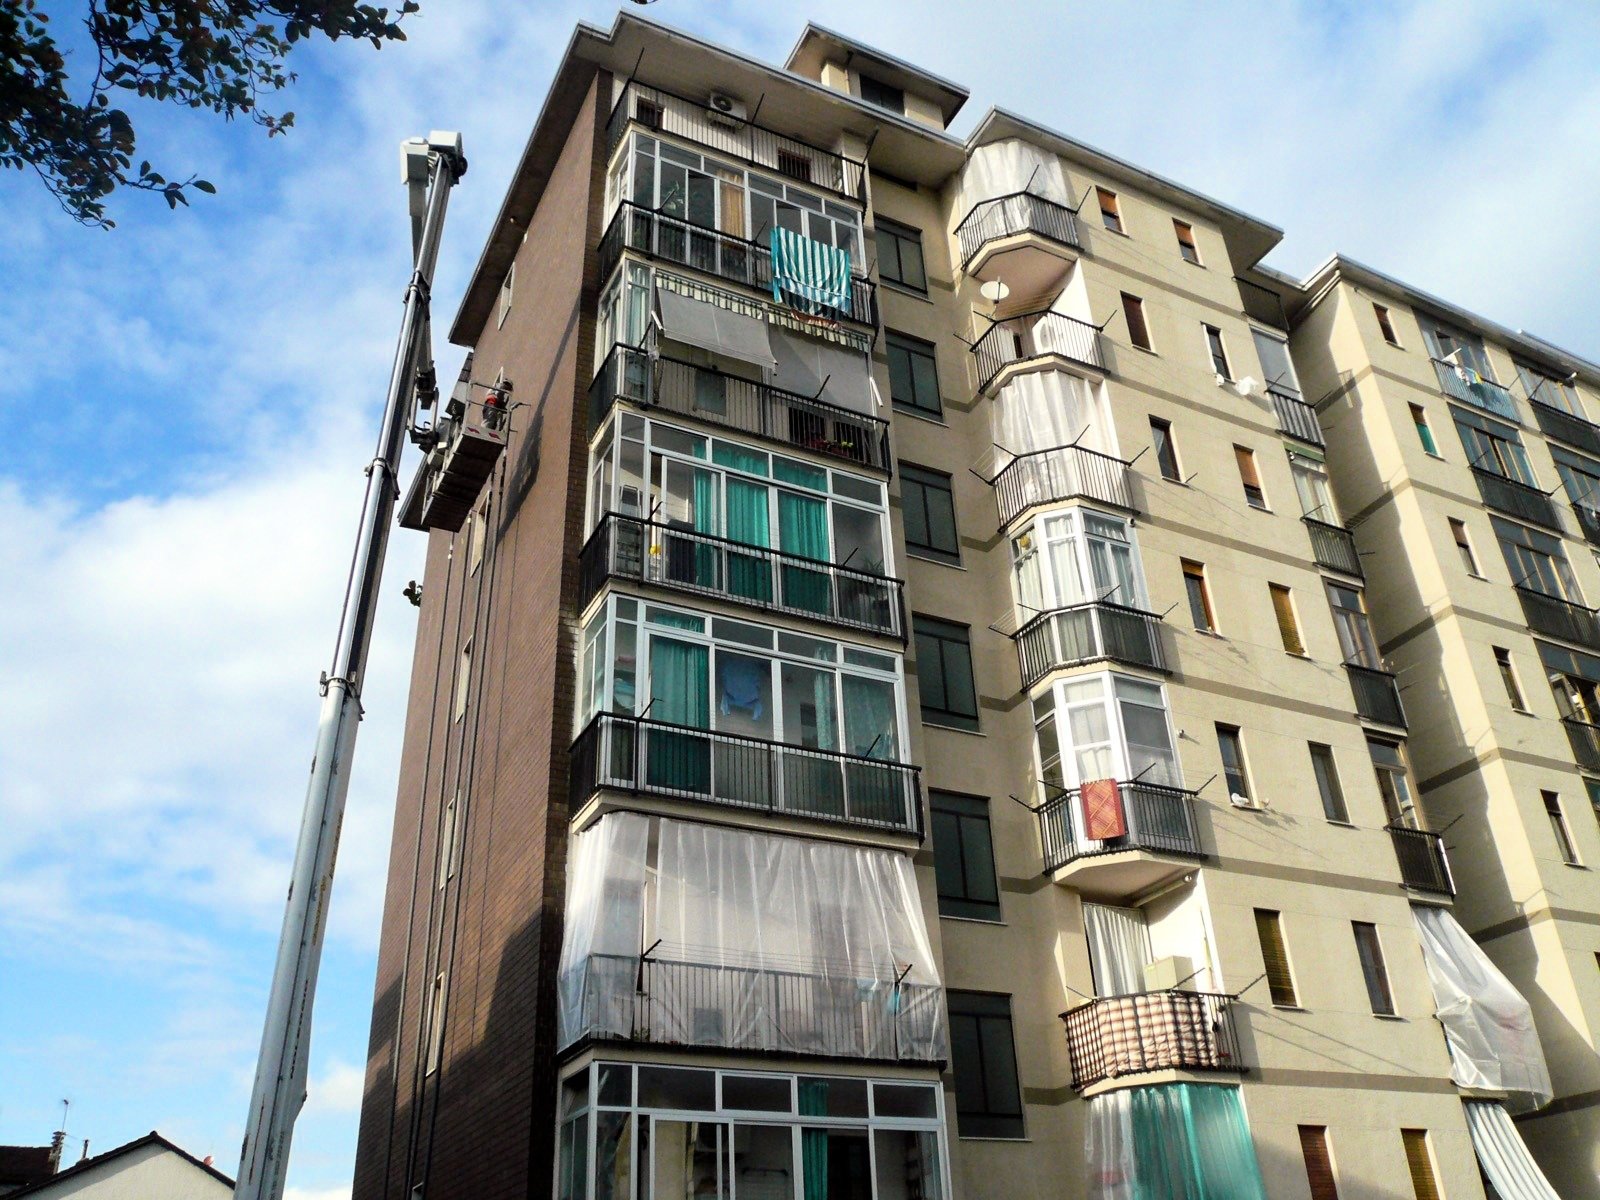 Isolare un solo appartamento del condominio è poss Isolare_un_solo_appartamento_del.jpg (Art. corrente, Pag. 1, Foto generica)